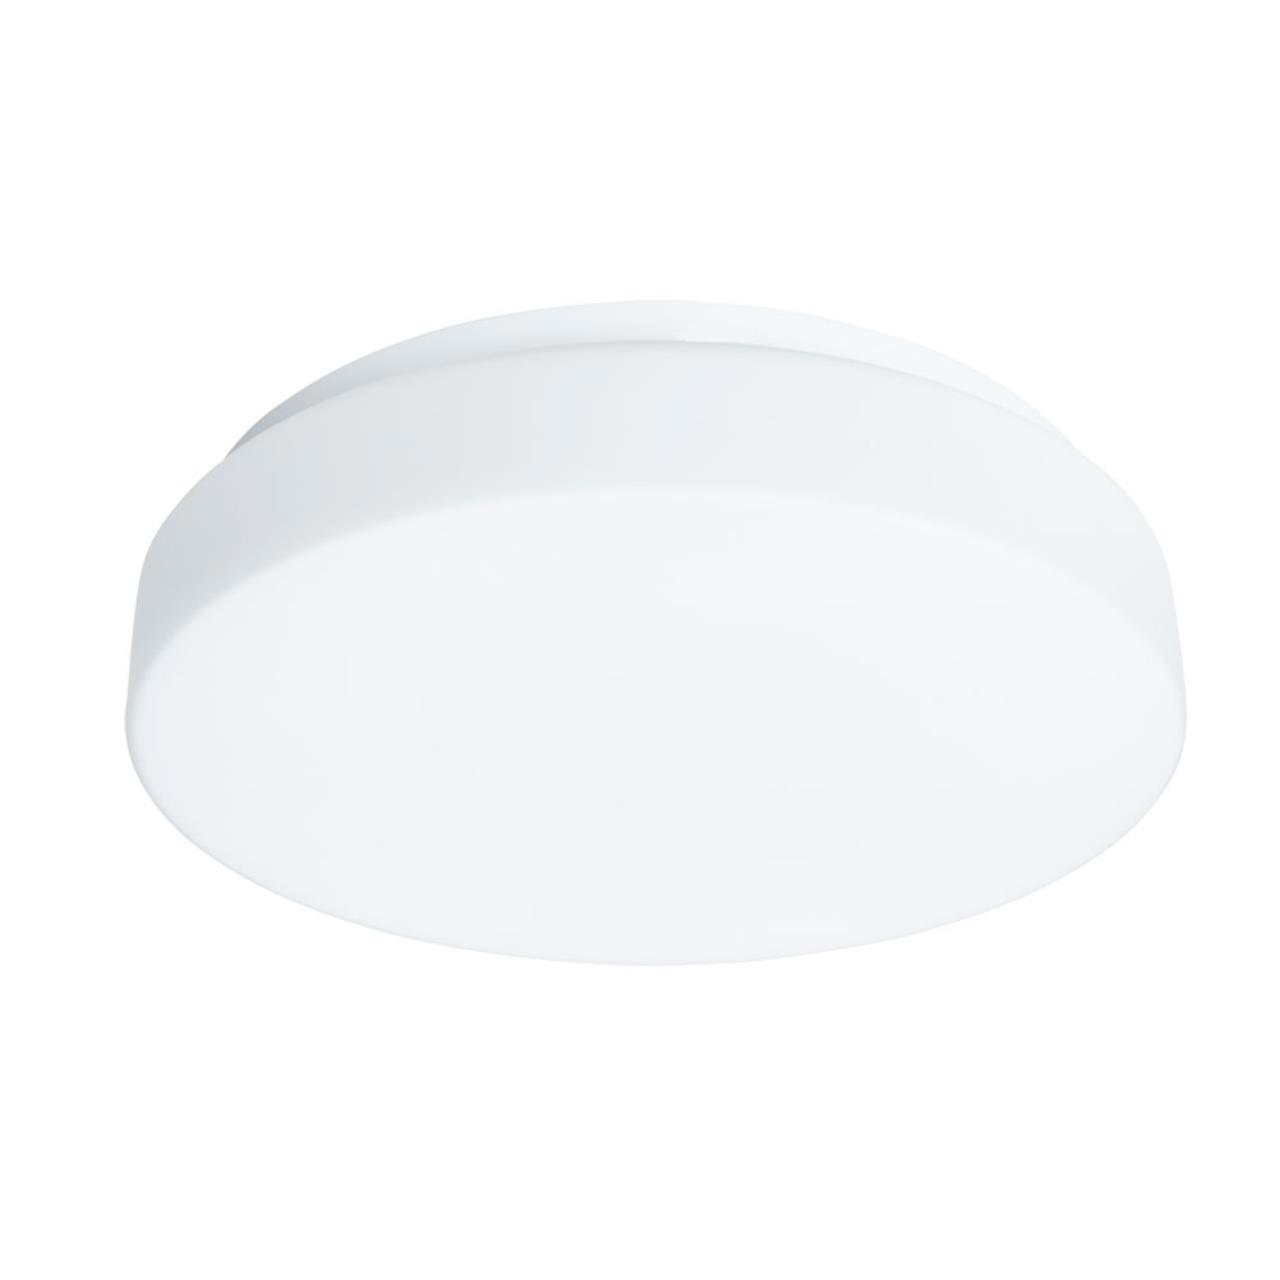 90234884 Люстра потолочная светодиодная Aqua-tablet Led 9 м² нейтральный белый свет цвет белый STLM-0142736 ARTELAMP